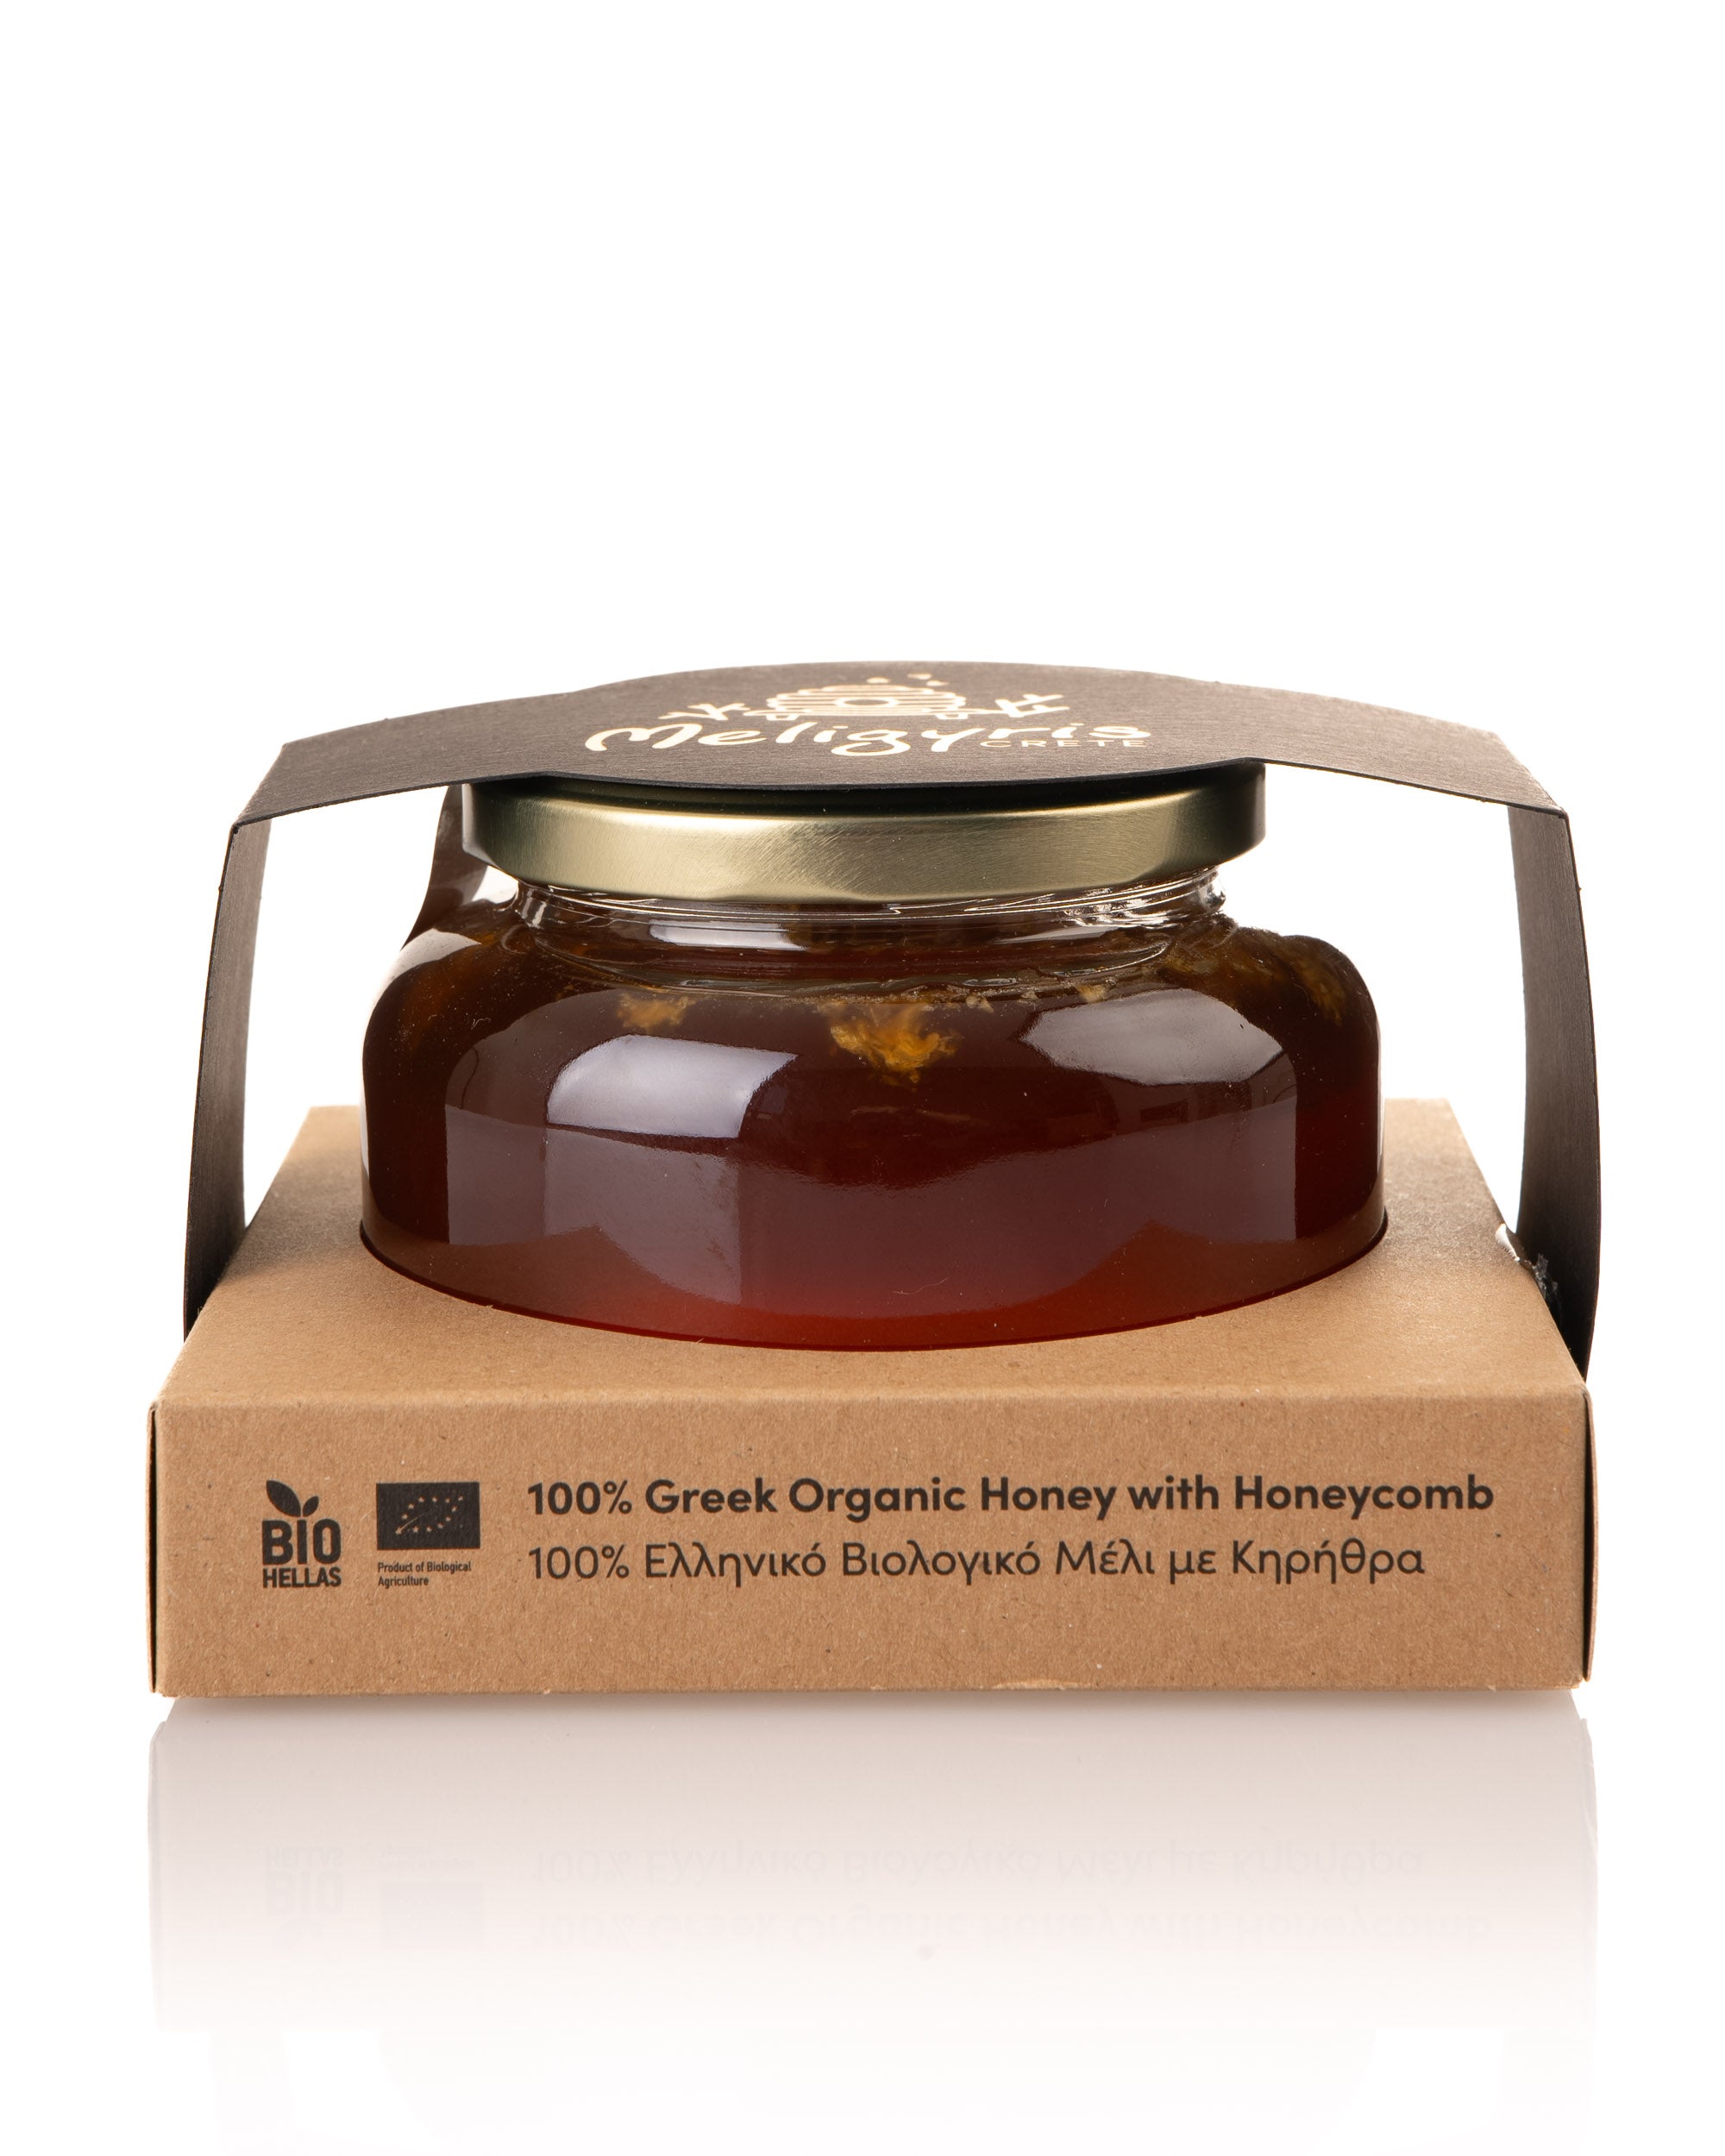 Βιολογικό Μέλι με κηρήθρα - Συσκευασία Δώρου